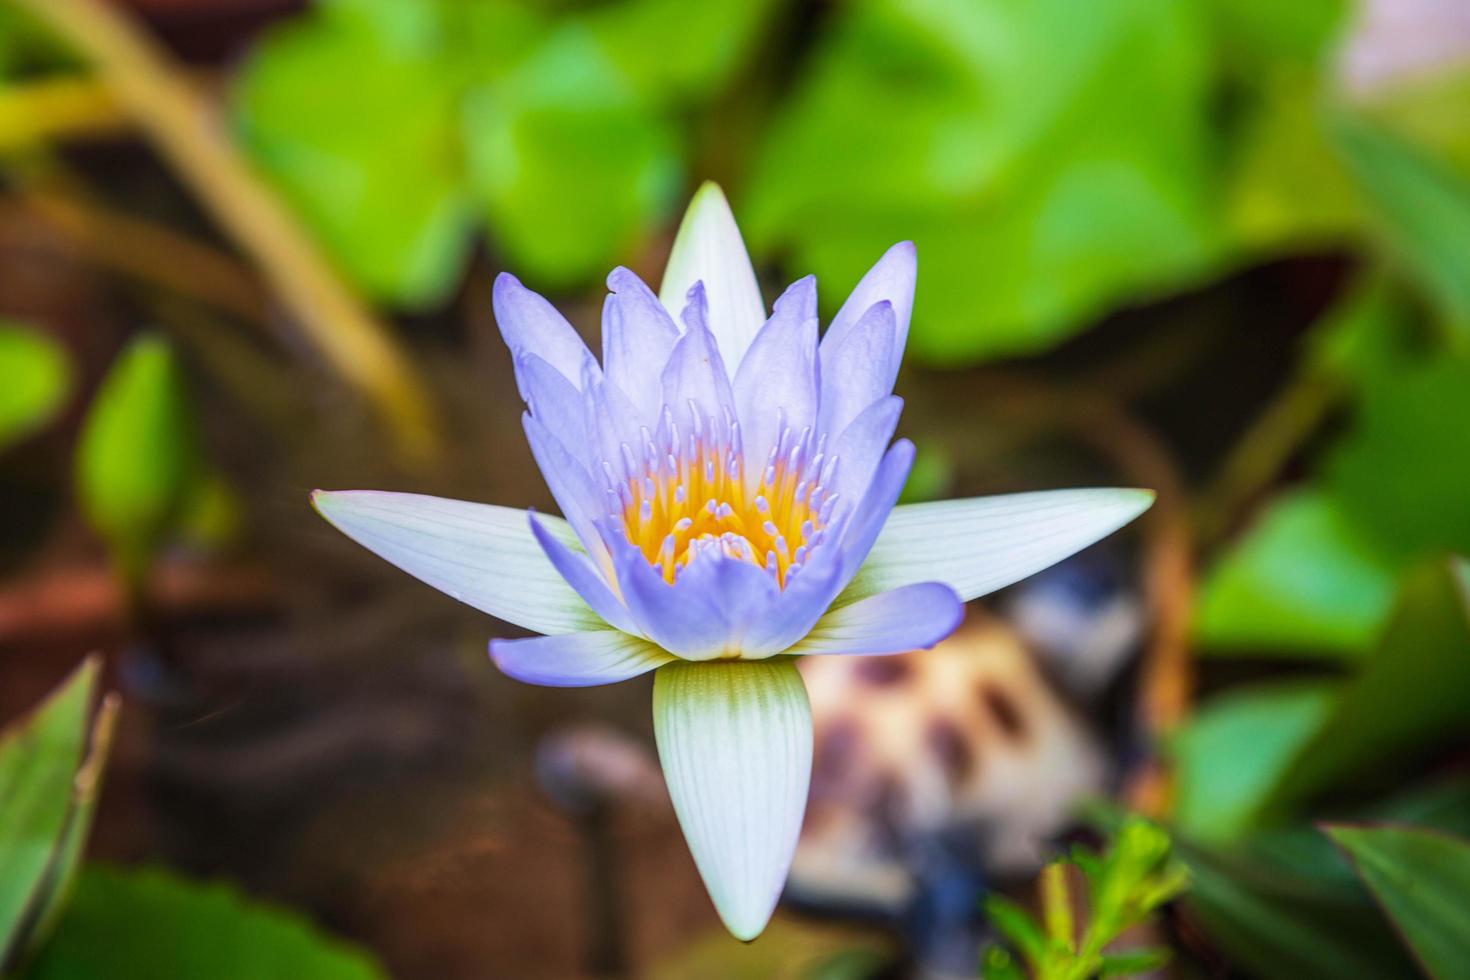 beau nénuphar violet ou fleur de lotus dans l'étang. photo